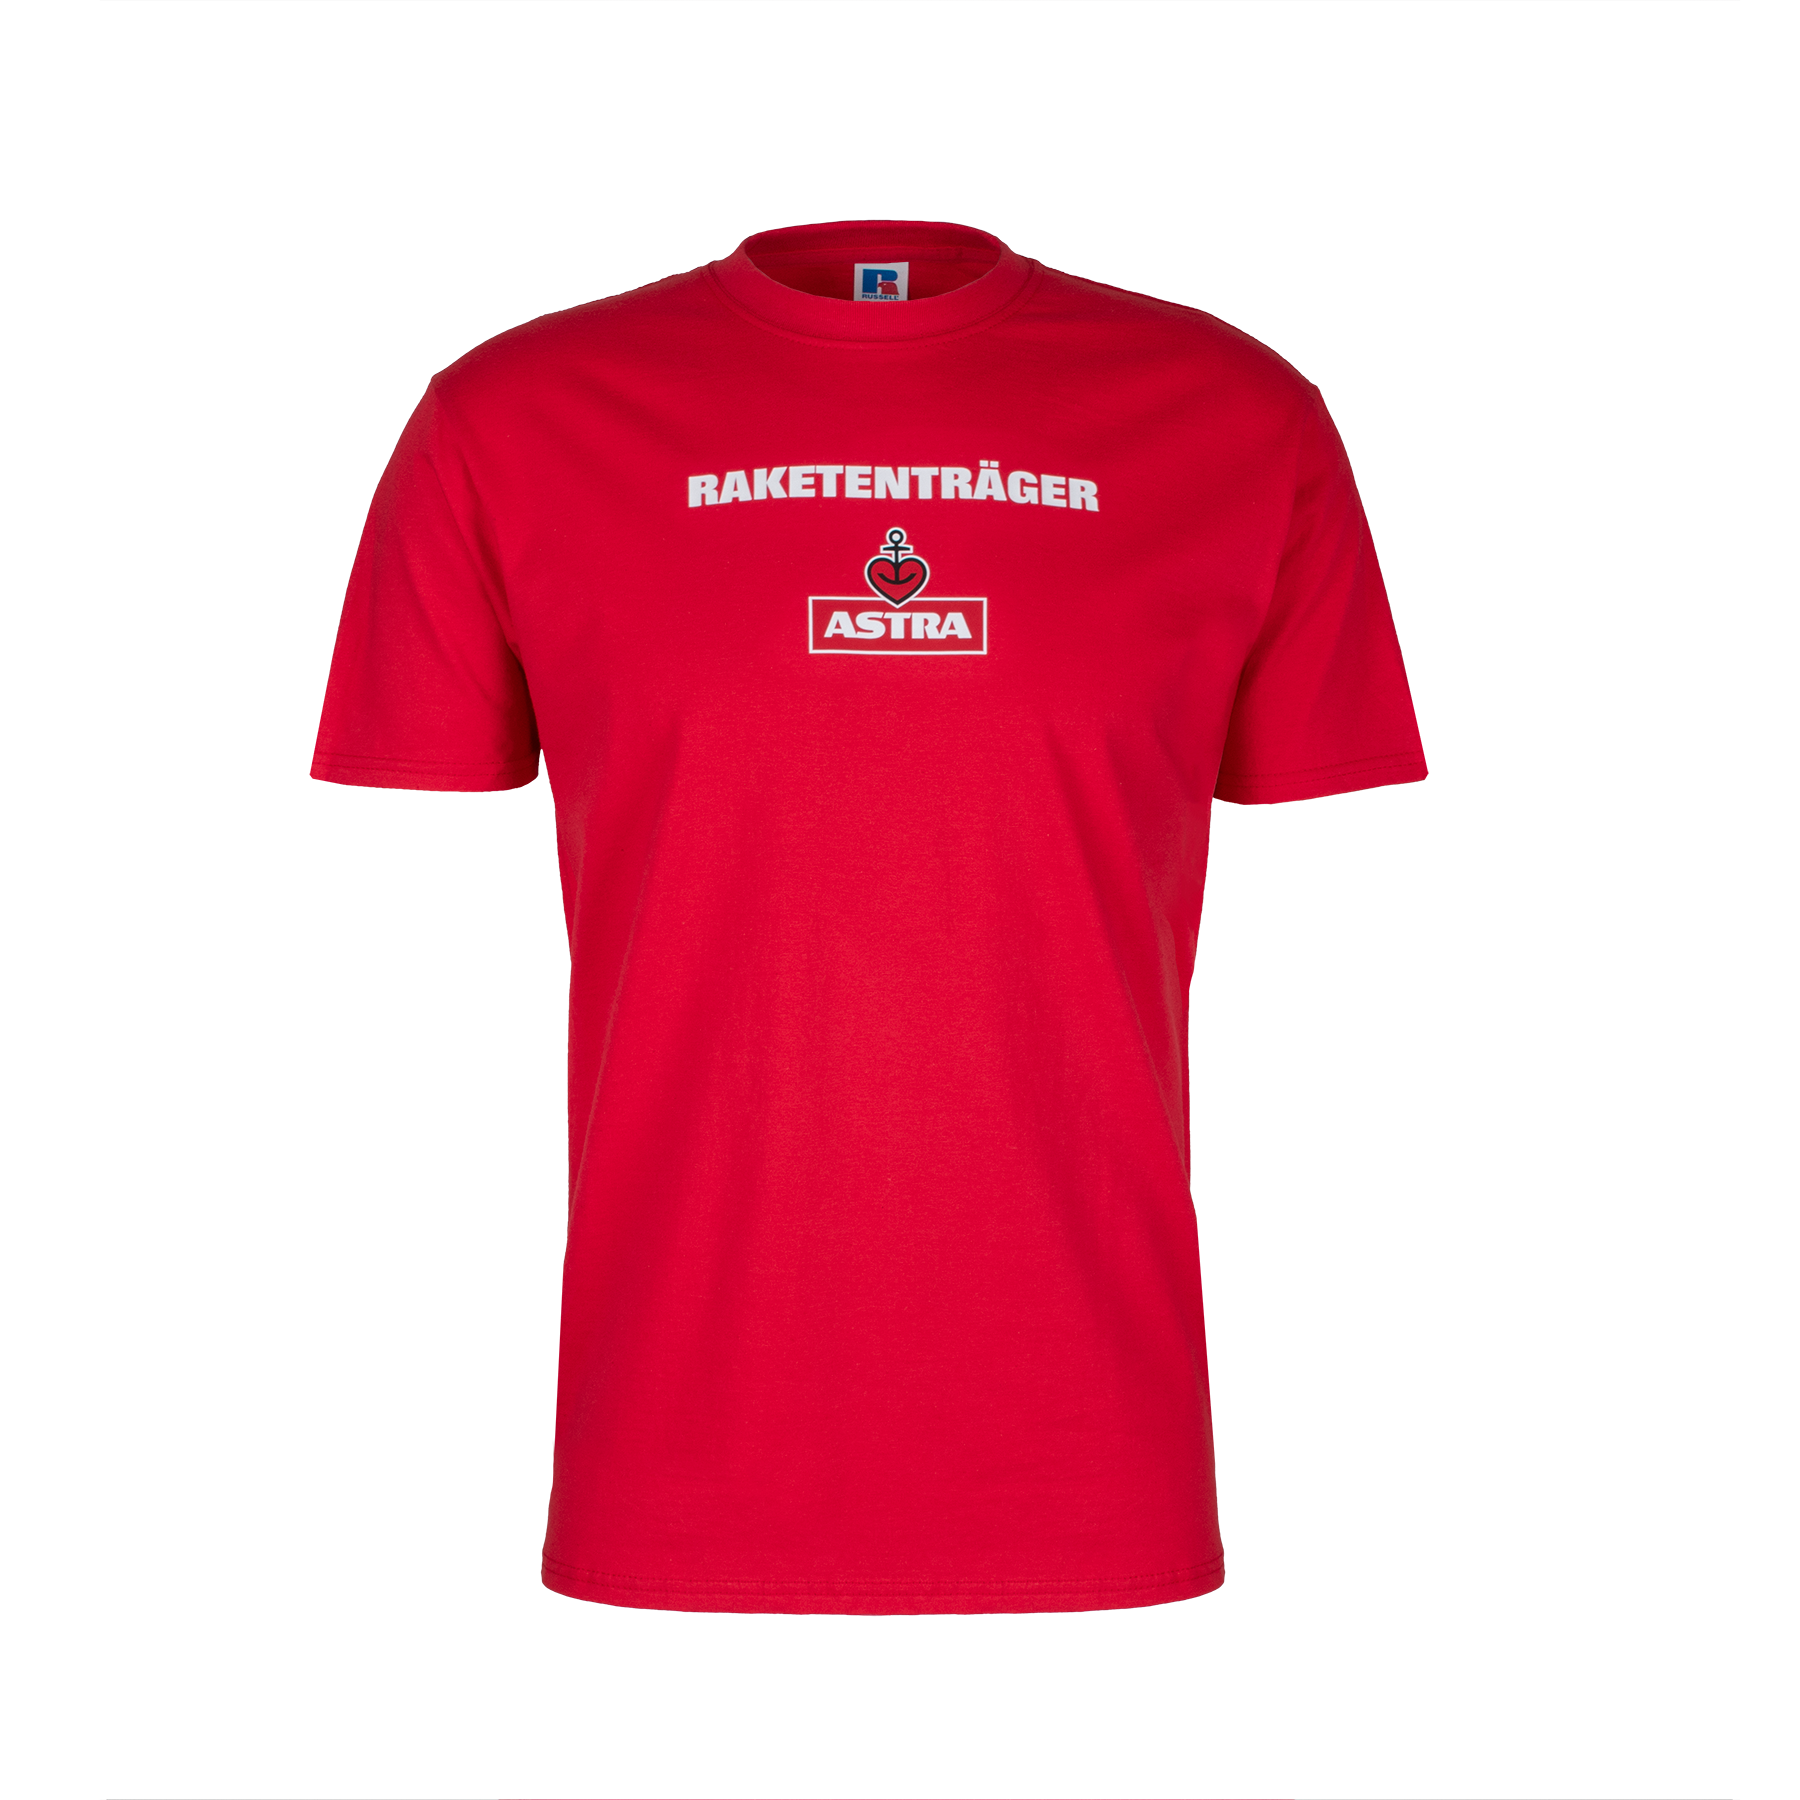 Astra T-Shirt "Raketenträger"